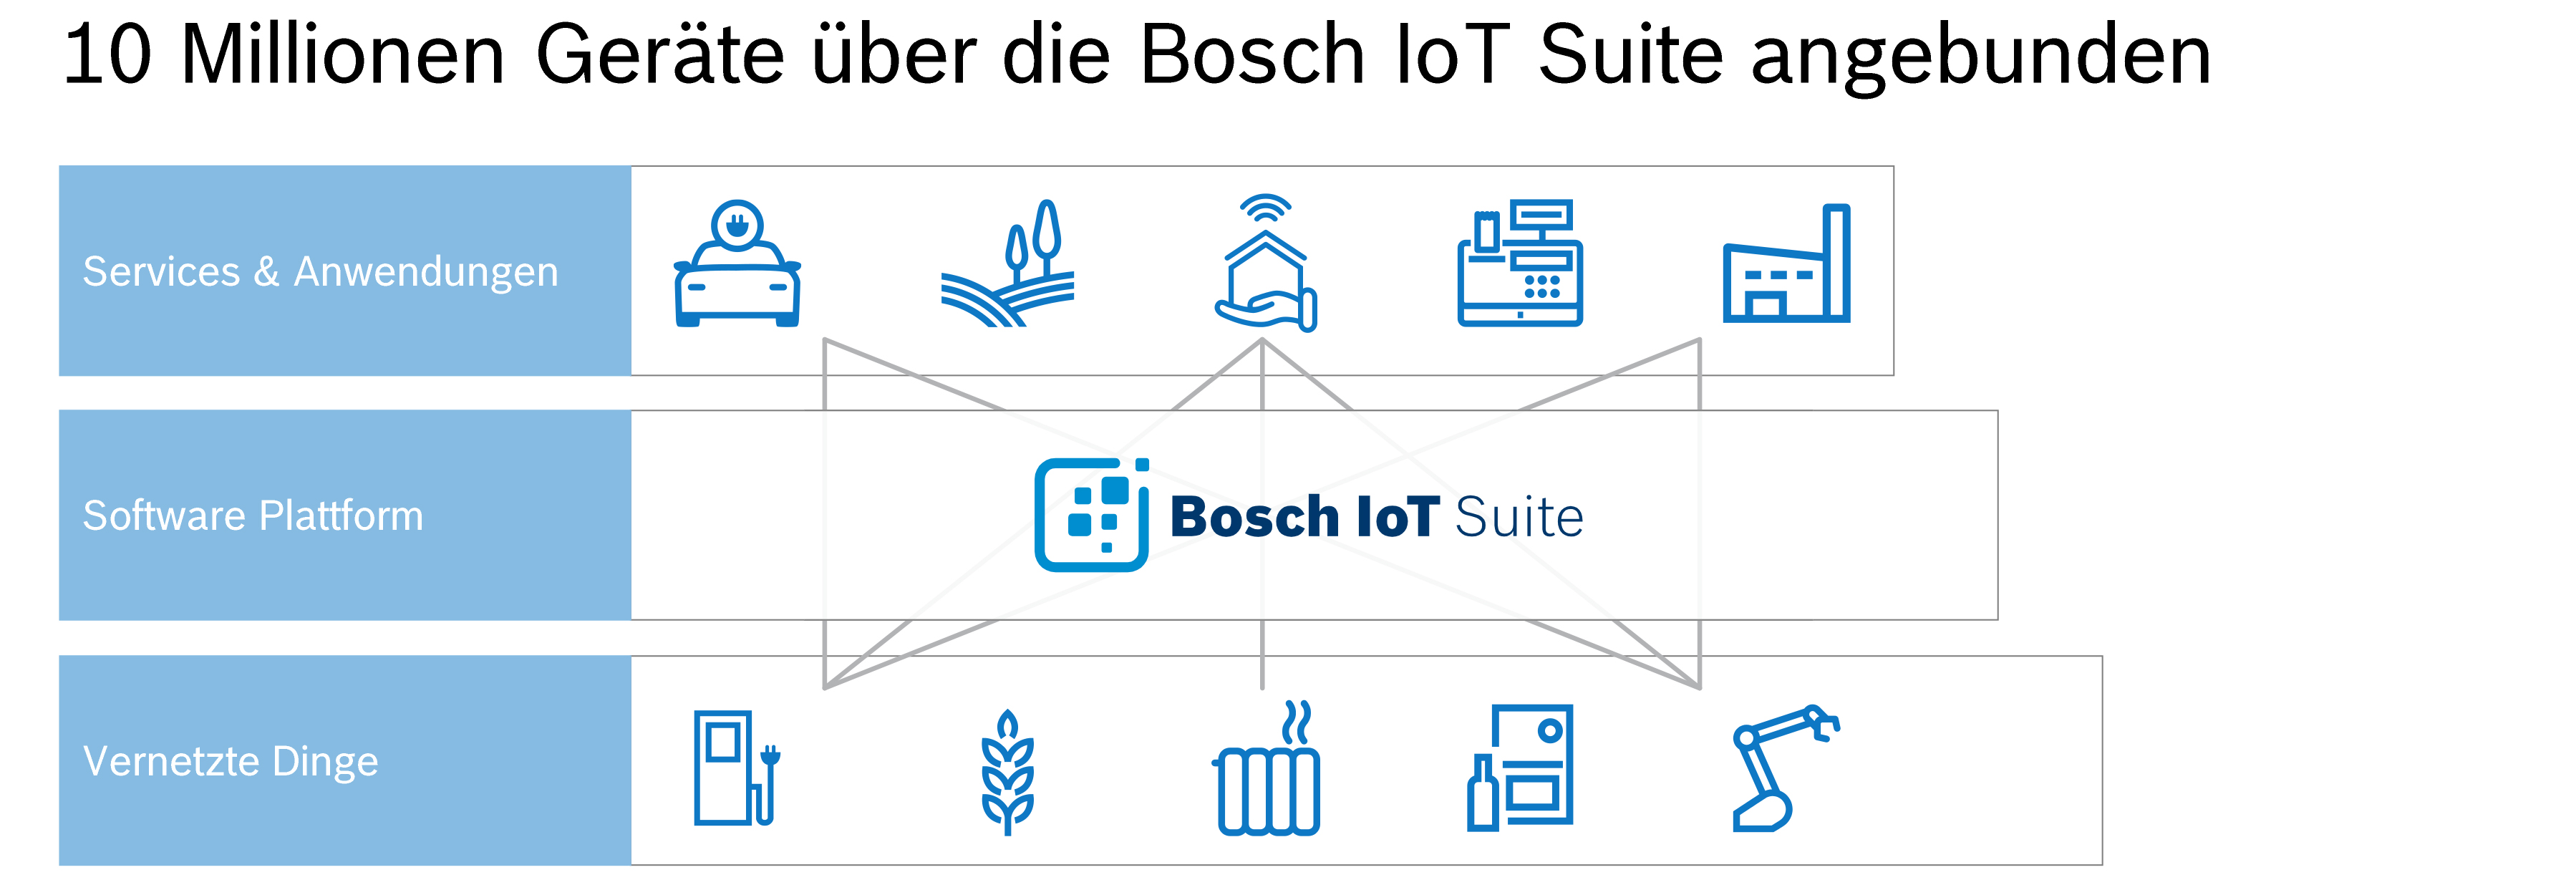 Bosch IoT Suite erreicht bedeutenden Meilenstein an angebundenen Geräten – Tendenz steigend